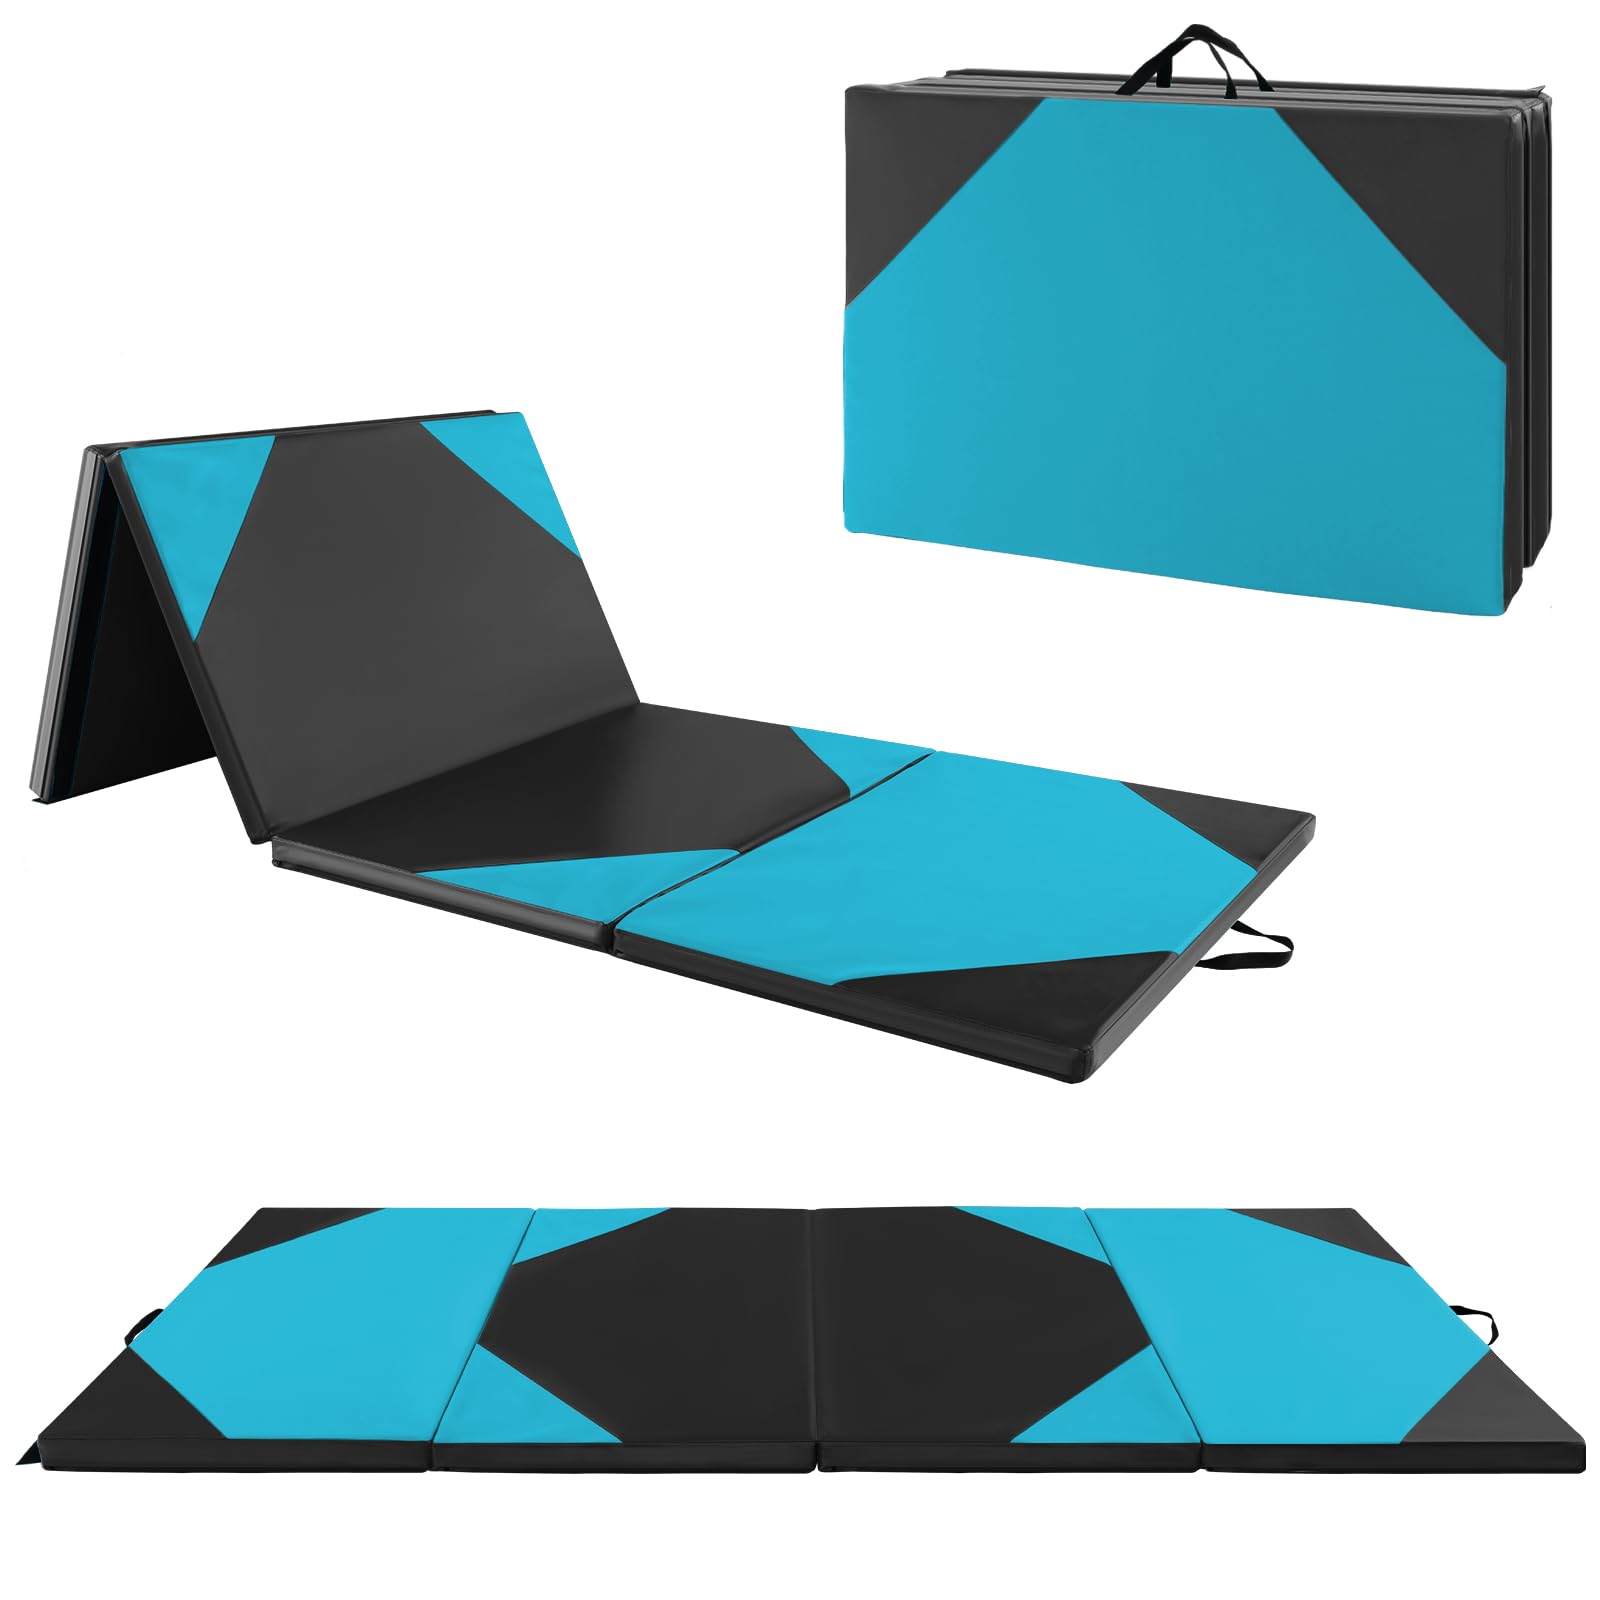 Giantex 4'x10' Gymnastics Mat, 2" Thick Folding Tumbling Mat with Carrying Handles